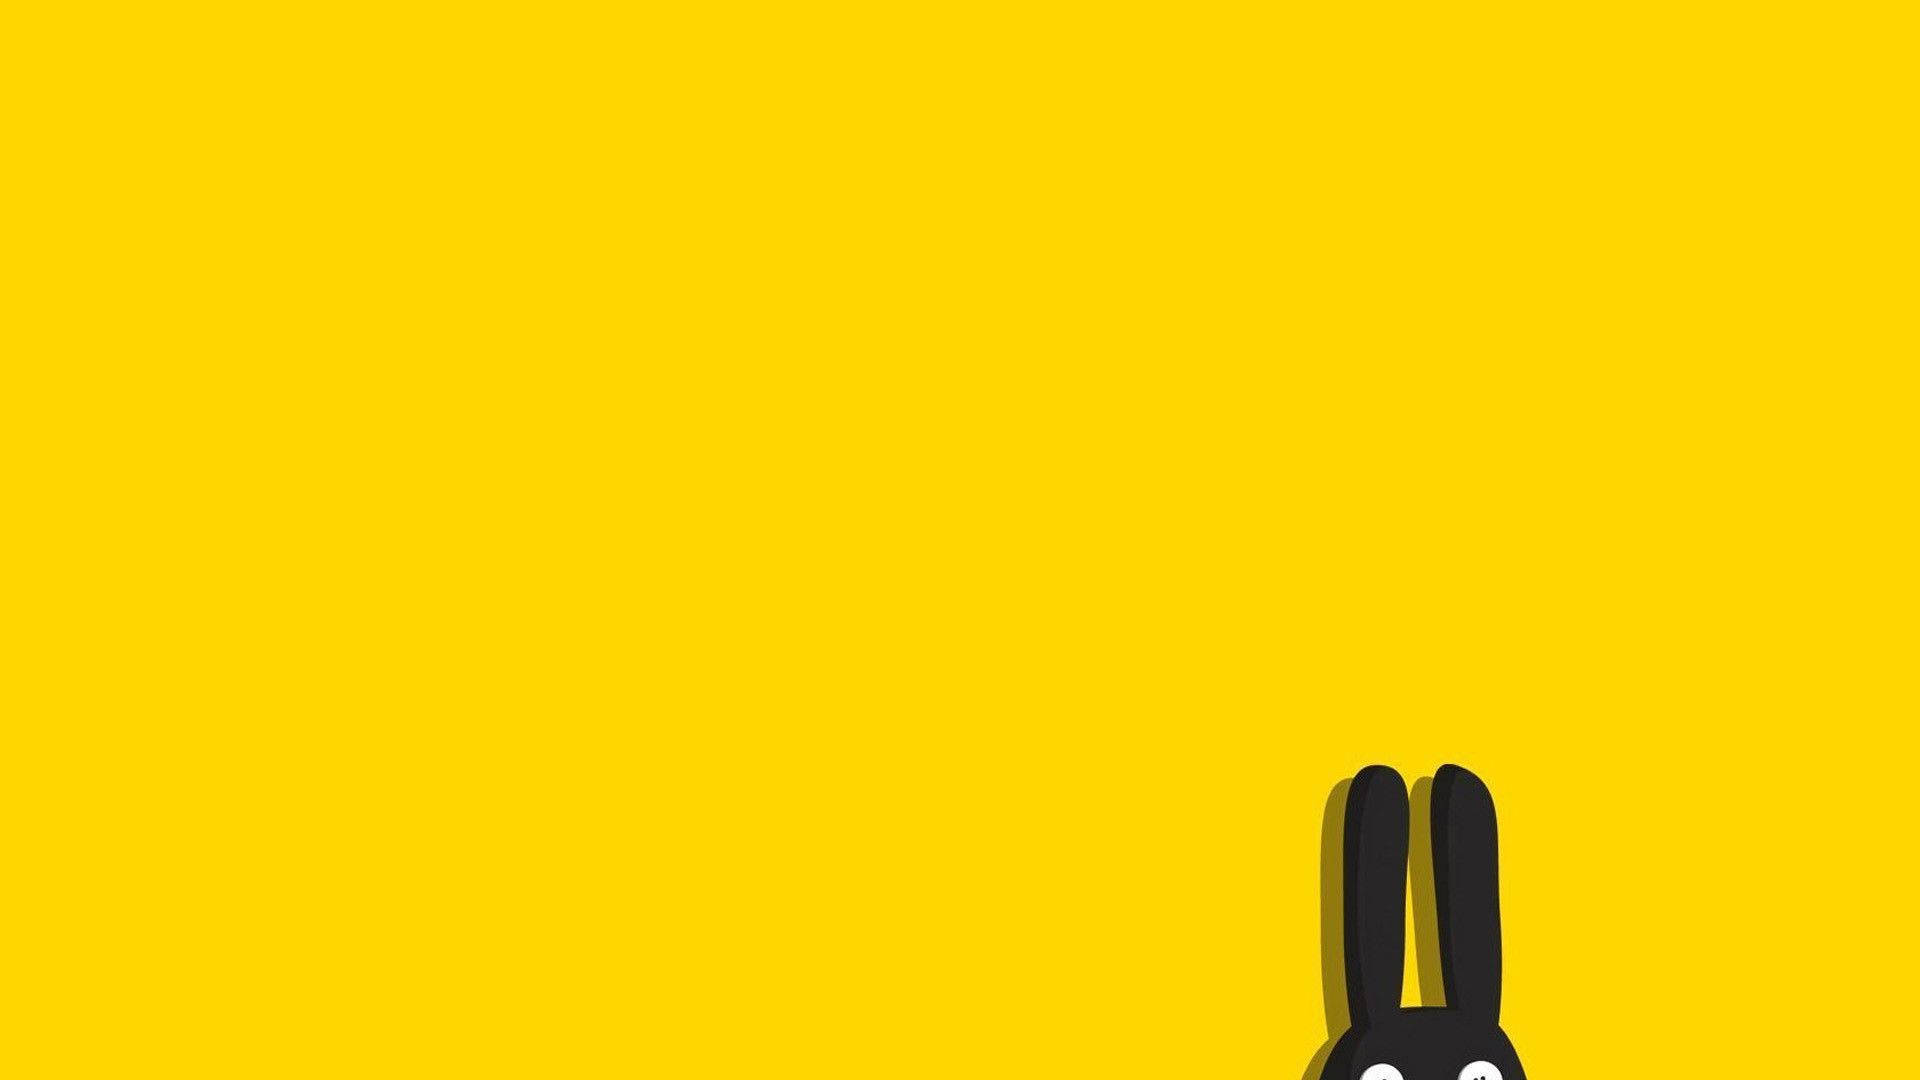 Einschwarzes Kaninchen Steht Auf Einem Gelben Hintergrund. Wallpaper